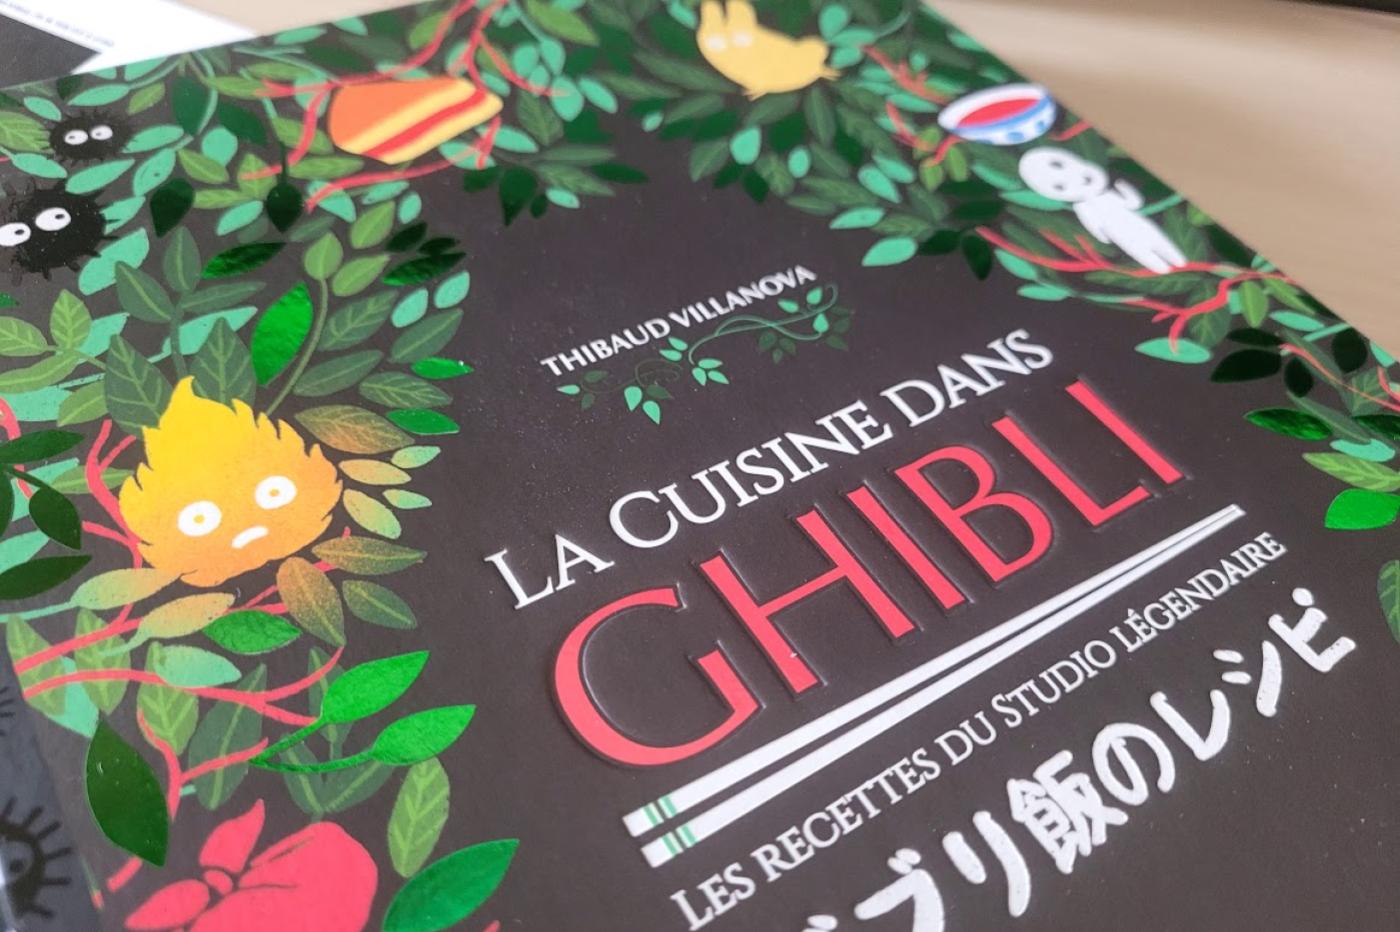 Chronique livre cuisine Les Bentos des films du Studio Ghibli - GeekTest